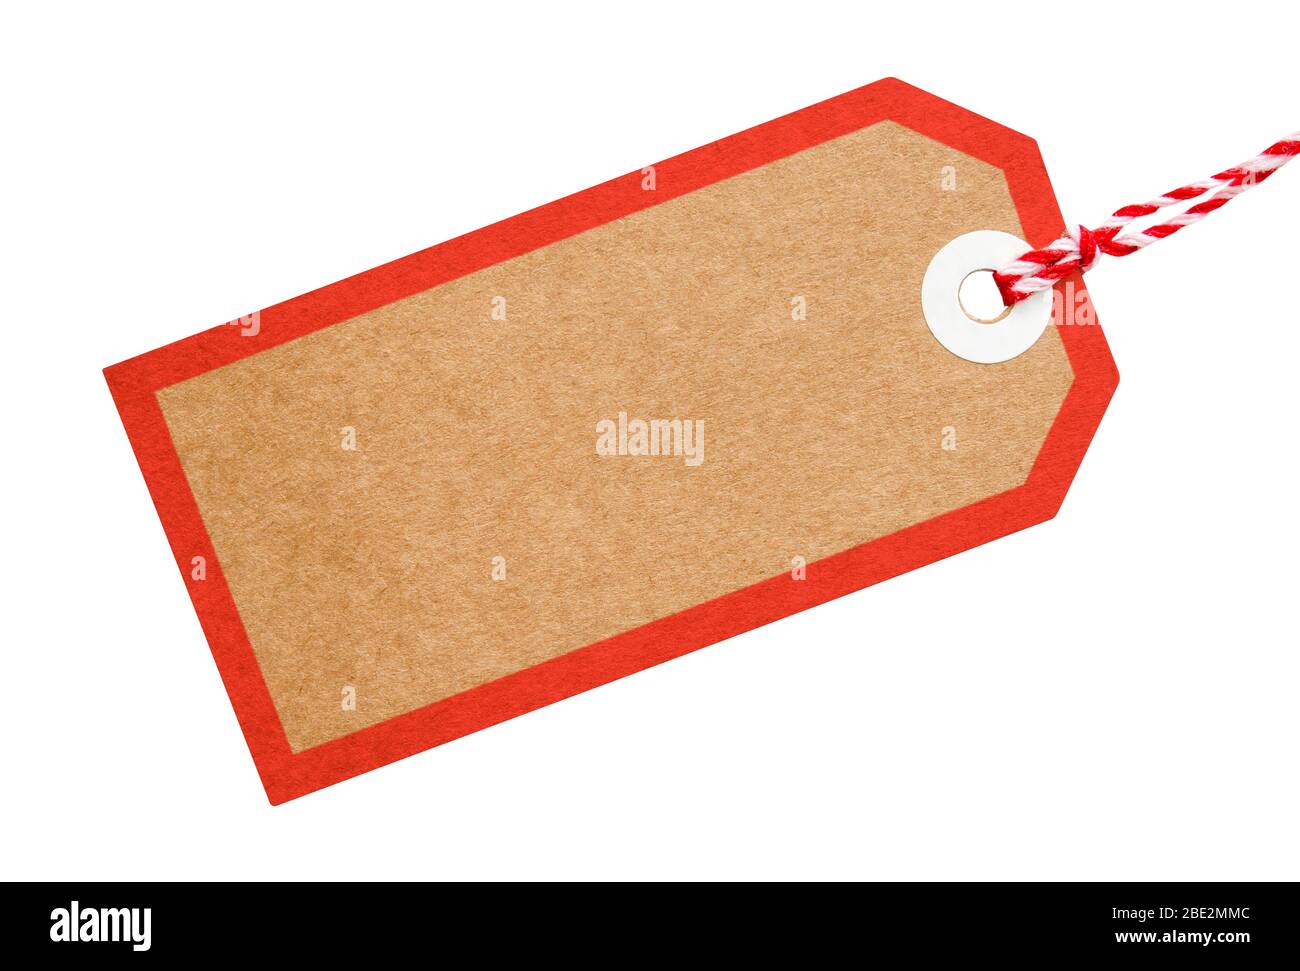 Étiquette cadeau en carton recyclé marron avec bordure attachée à la ficelle rouge et blanche sur un fond isolé Banque D'Images